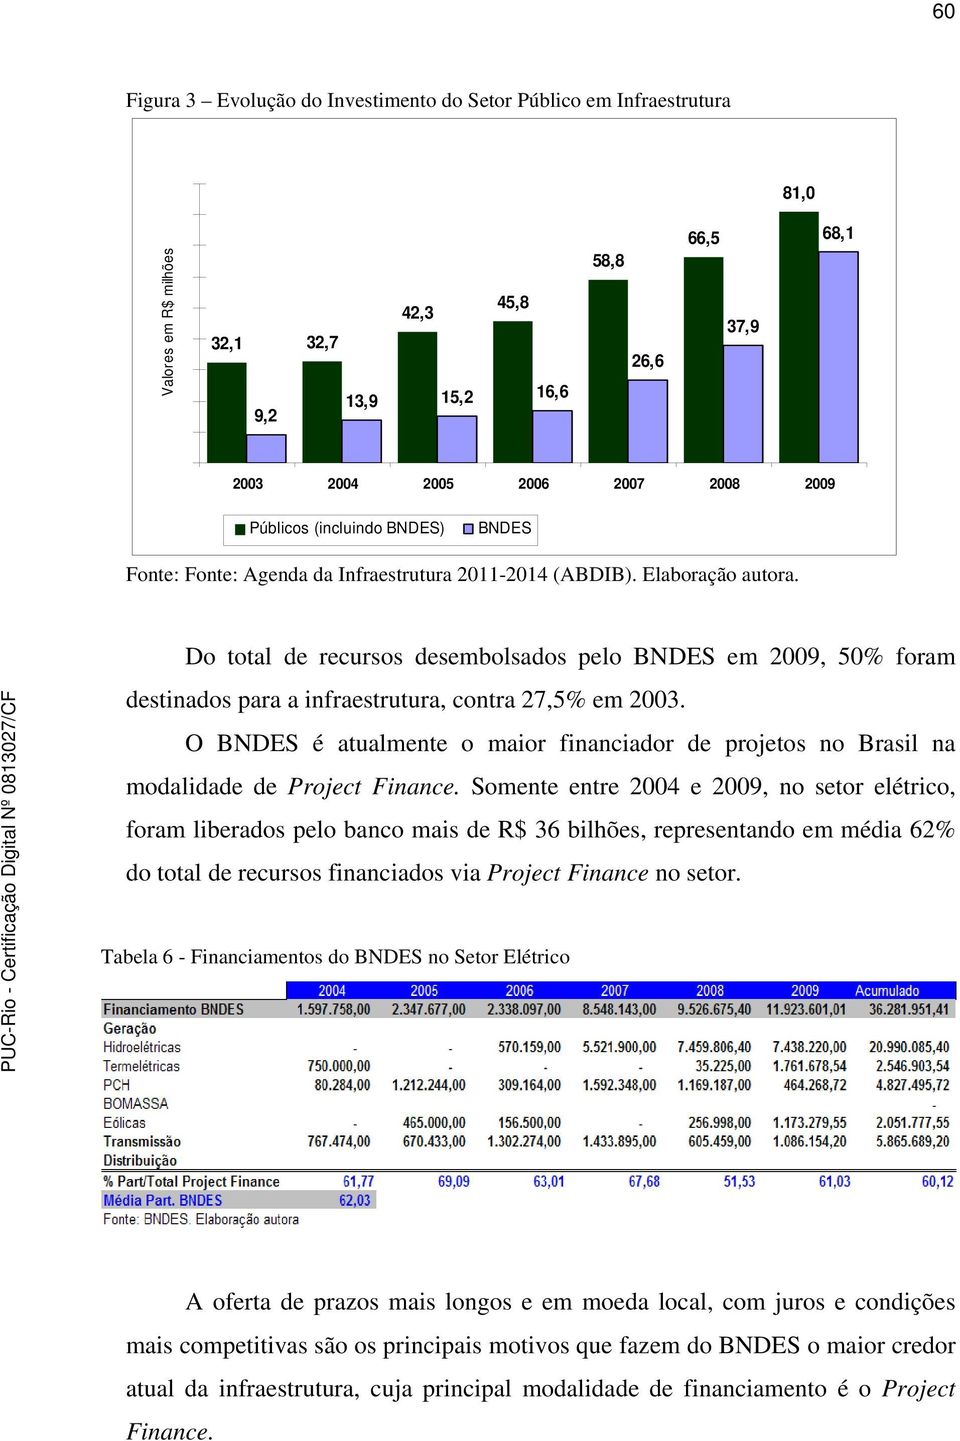 Do total de recursos desembolsados pelo BNDES em 2009, 50% foram destinados para a infraestrutura, contra 27,5% em 2003.